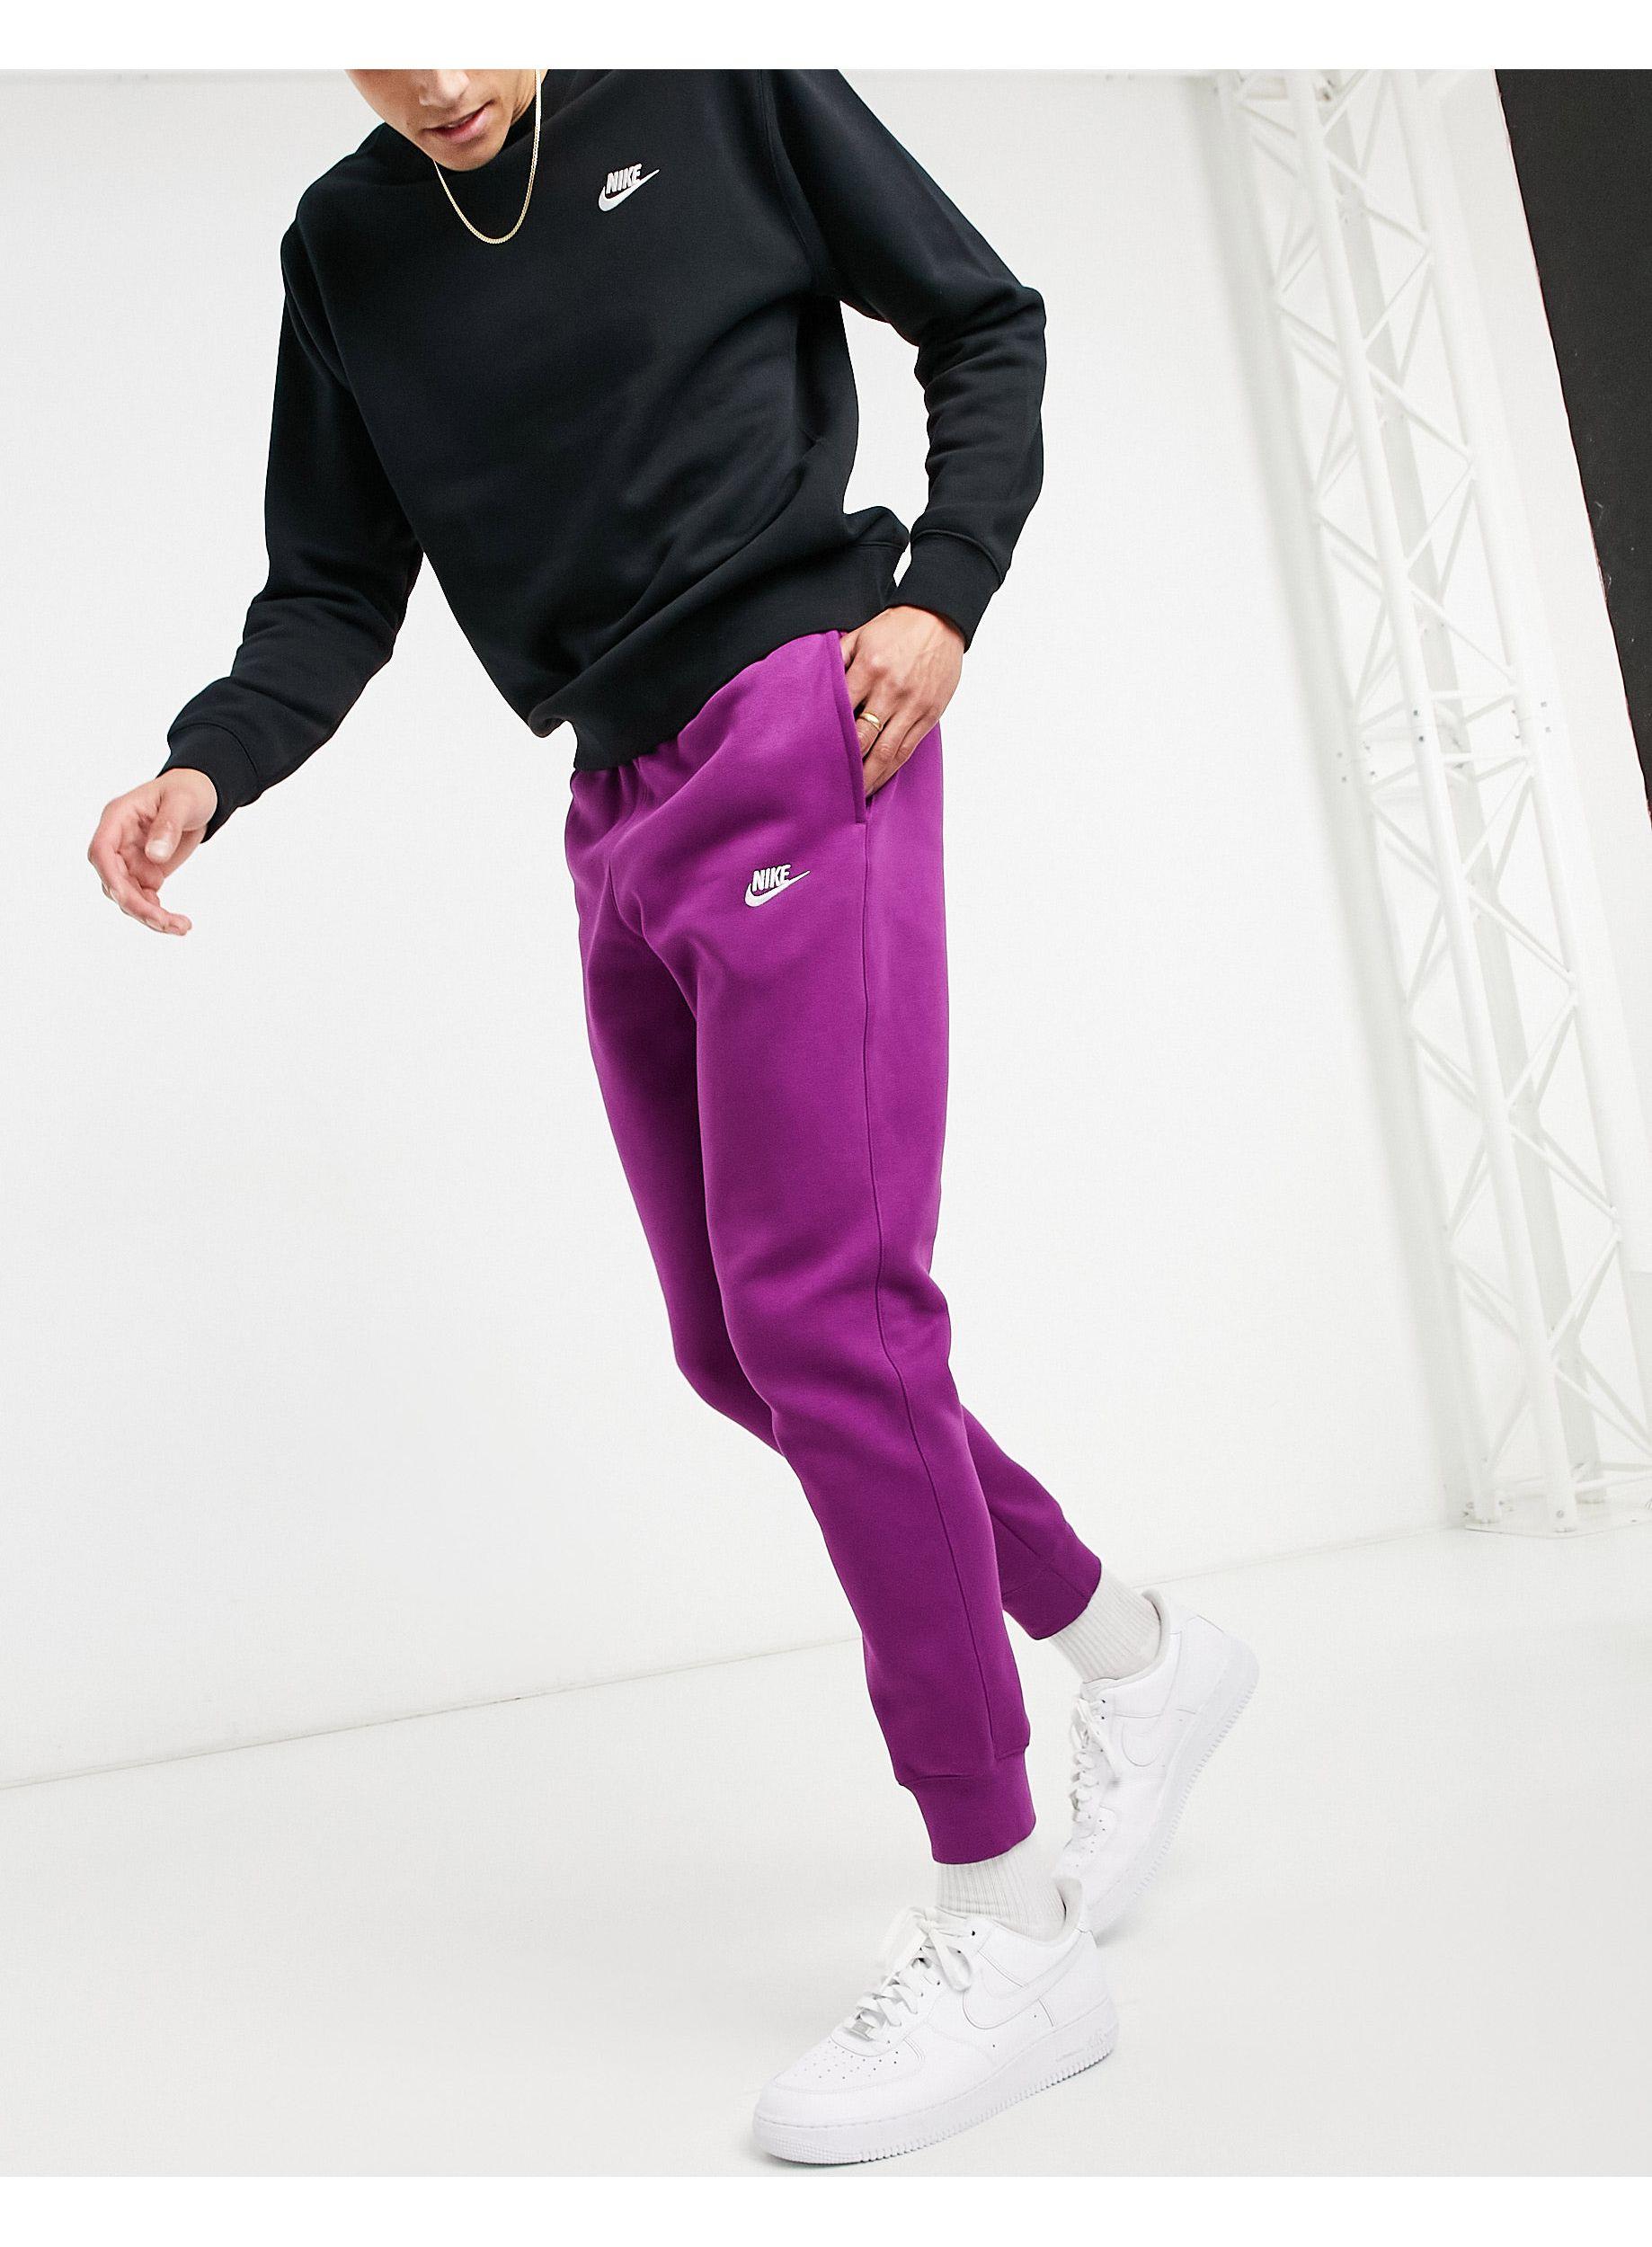 jogger violet